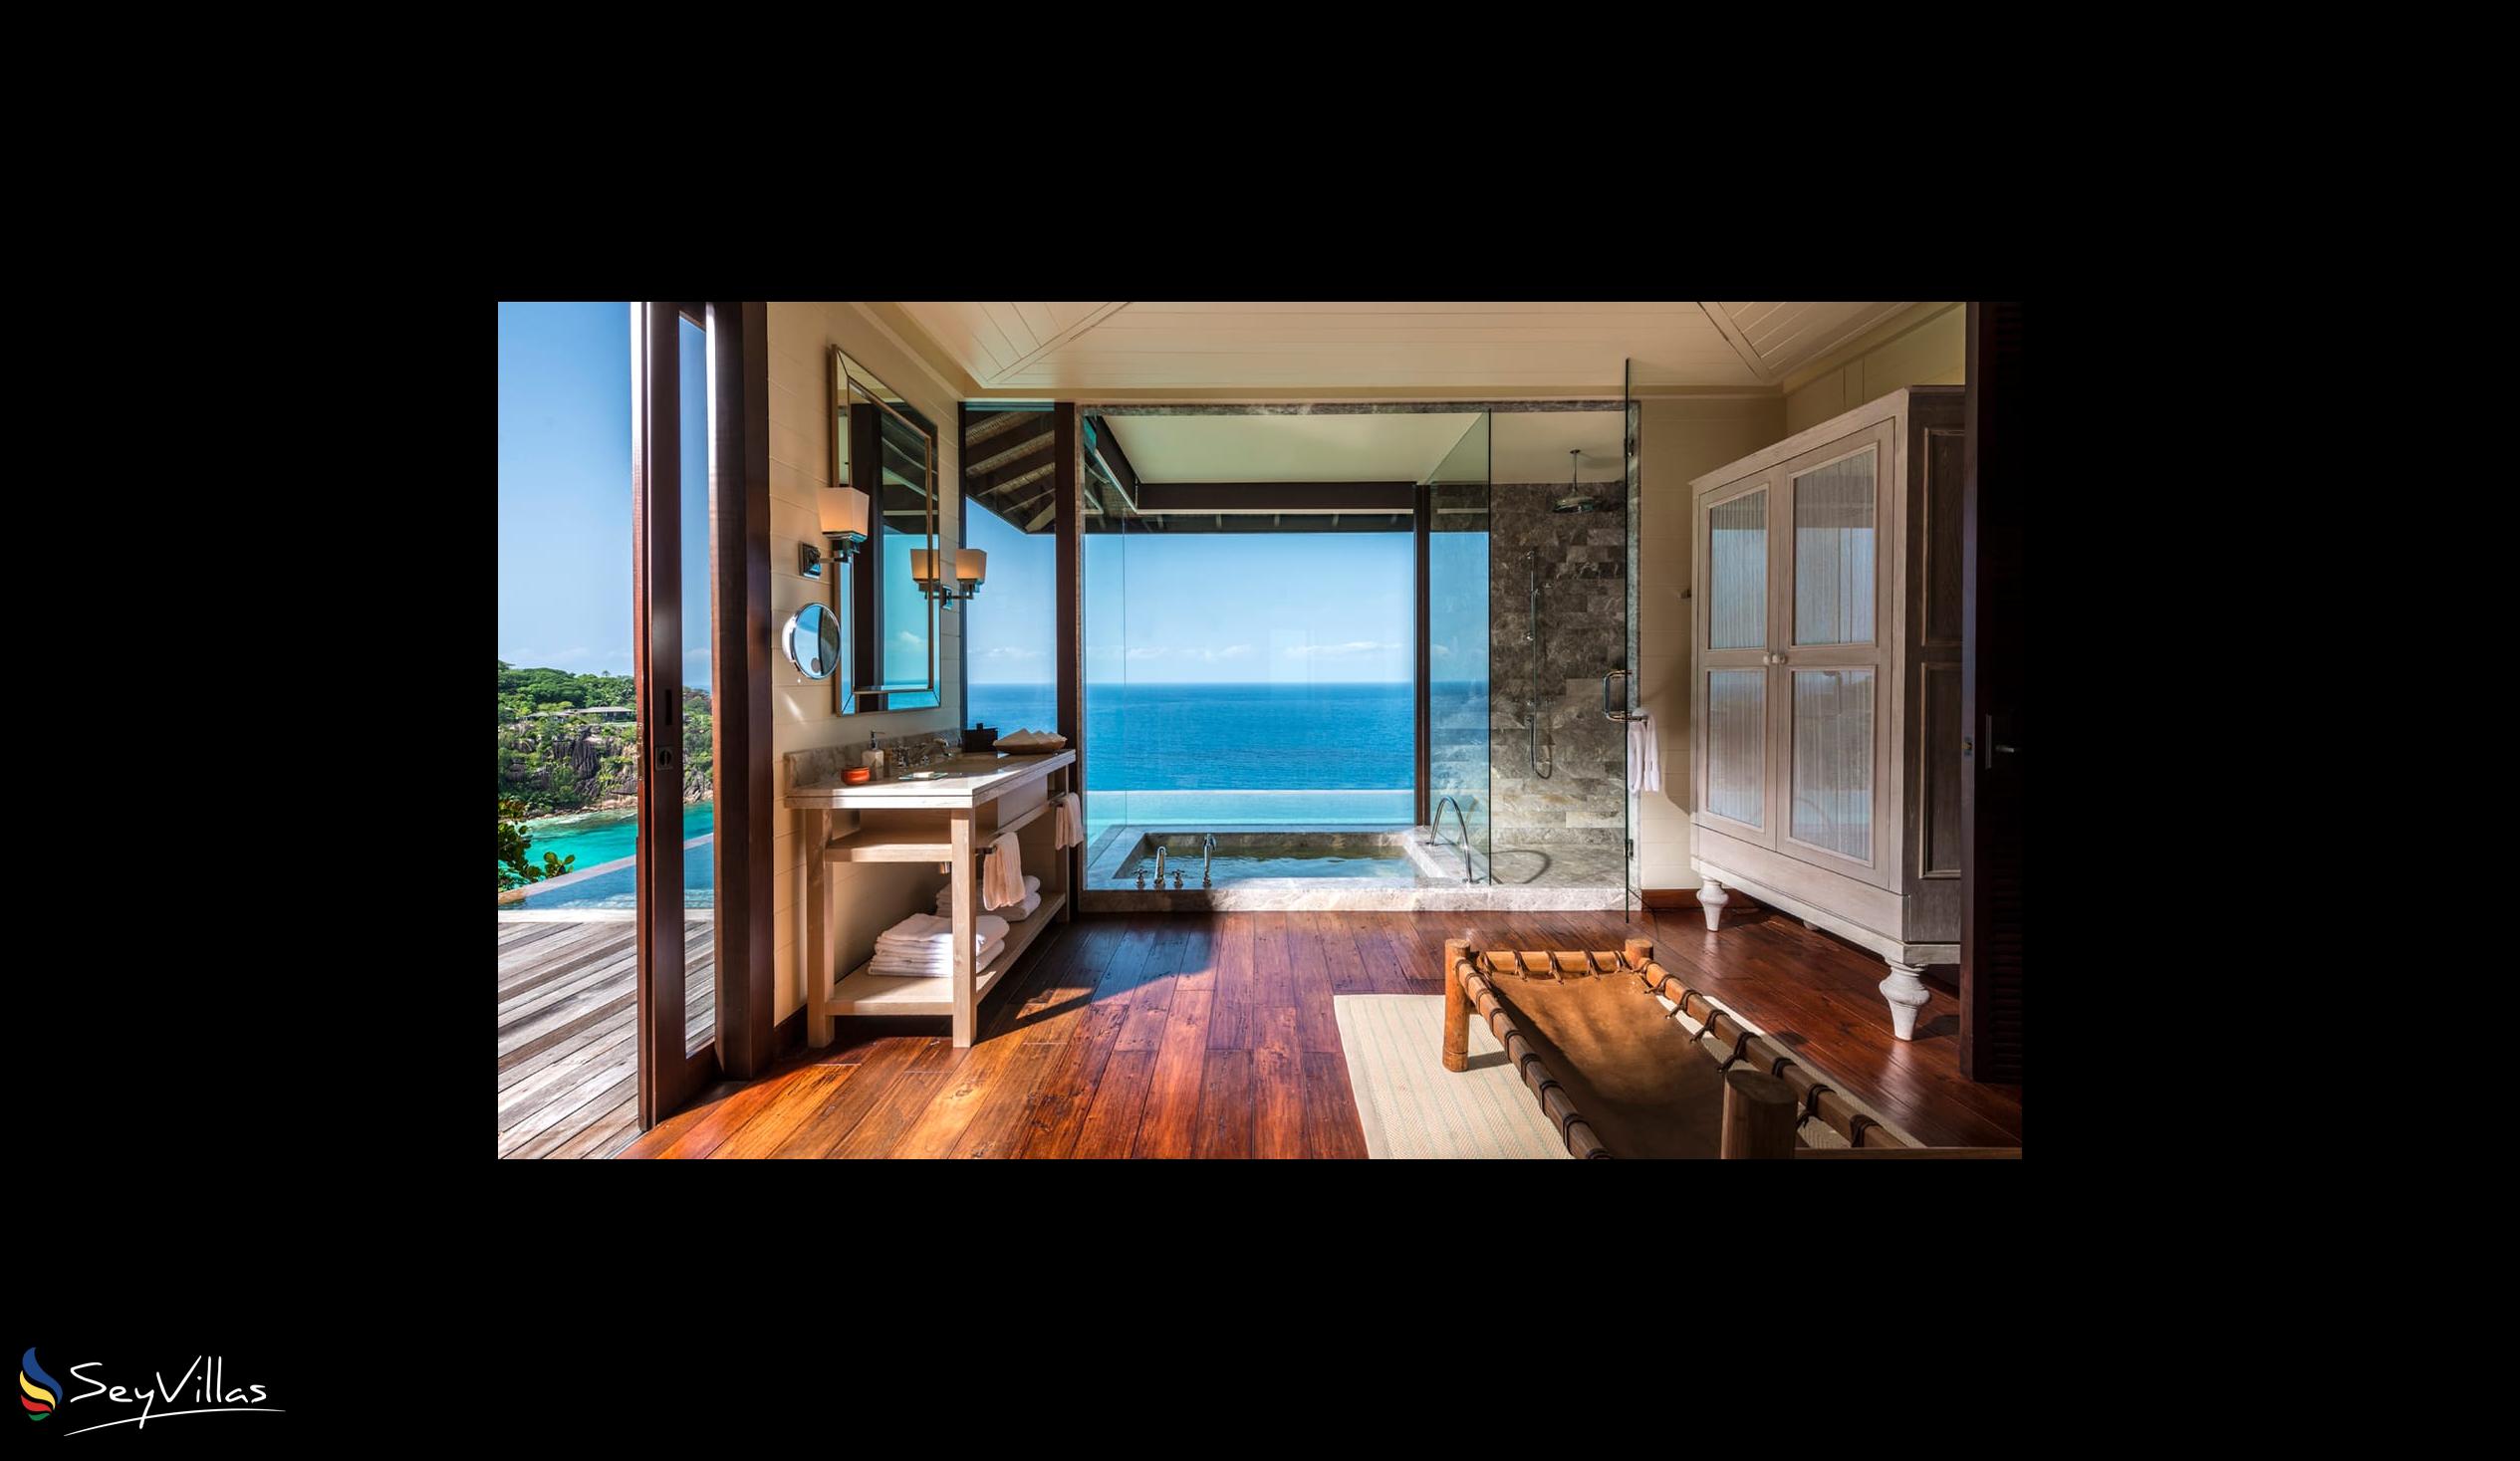 Foto 24: Four Seasons Resort - 2-Bedroom Hilltop Ocean View Suite - Mahé (Seychellen)